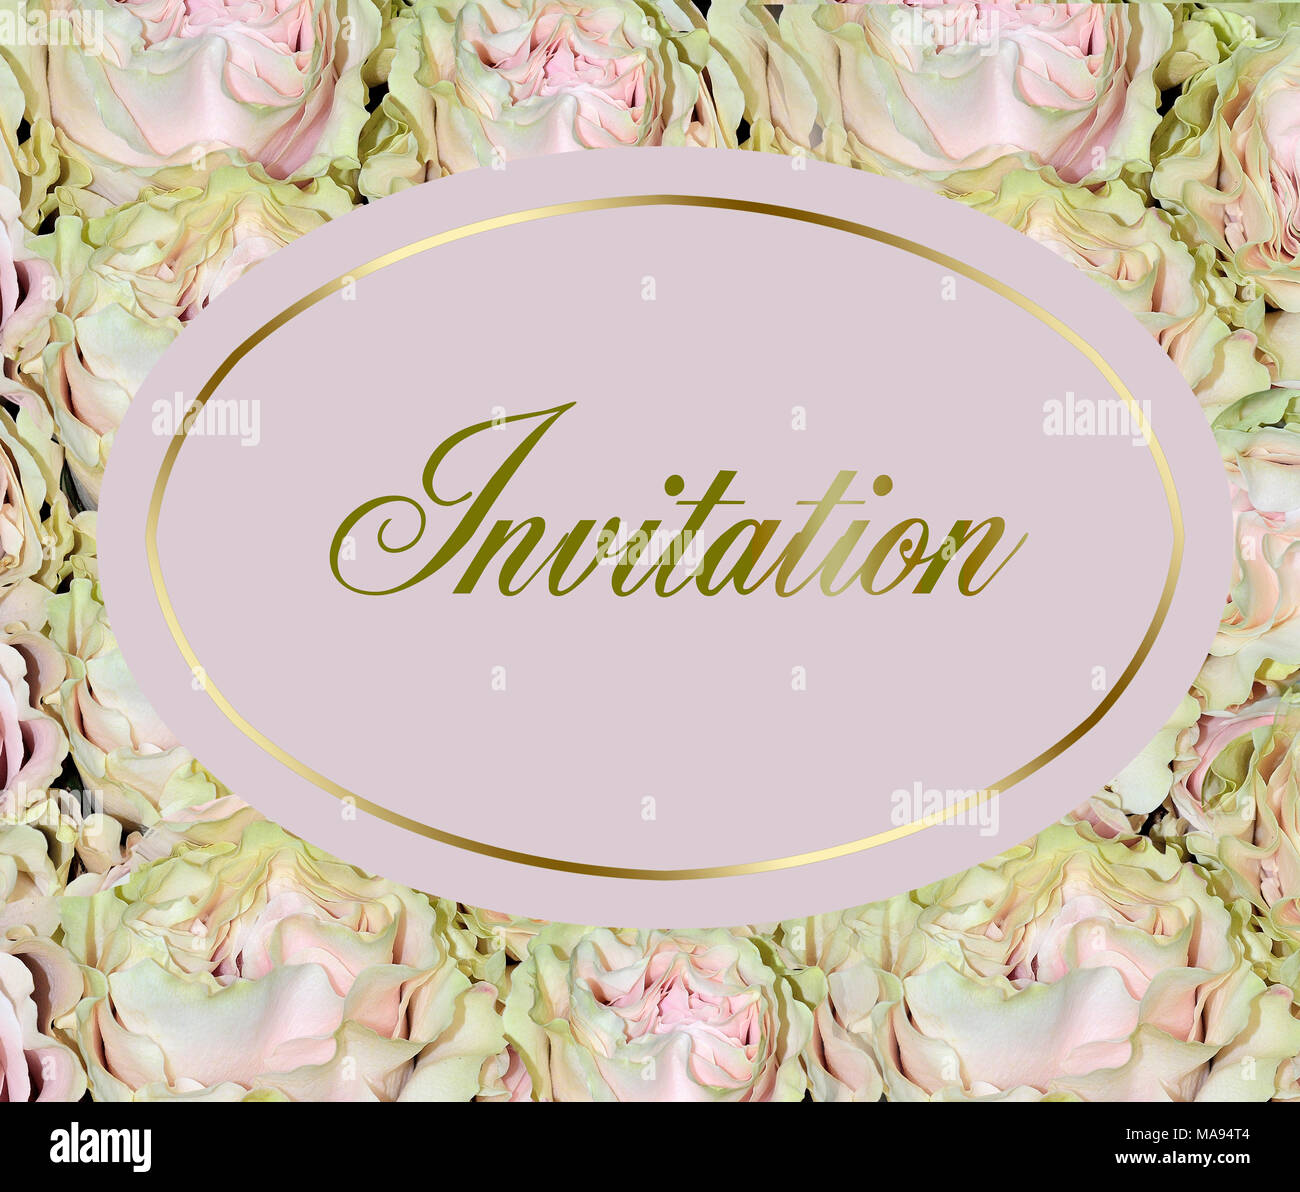 Schöne Hochzeit Einladung mit sanftem Rosa Rosen mit hellgrünen Farbton der Blütenblätter - Elegante floral background, romantische Kunst Design mit goldenem Text Stockfoto